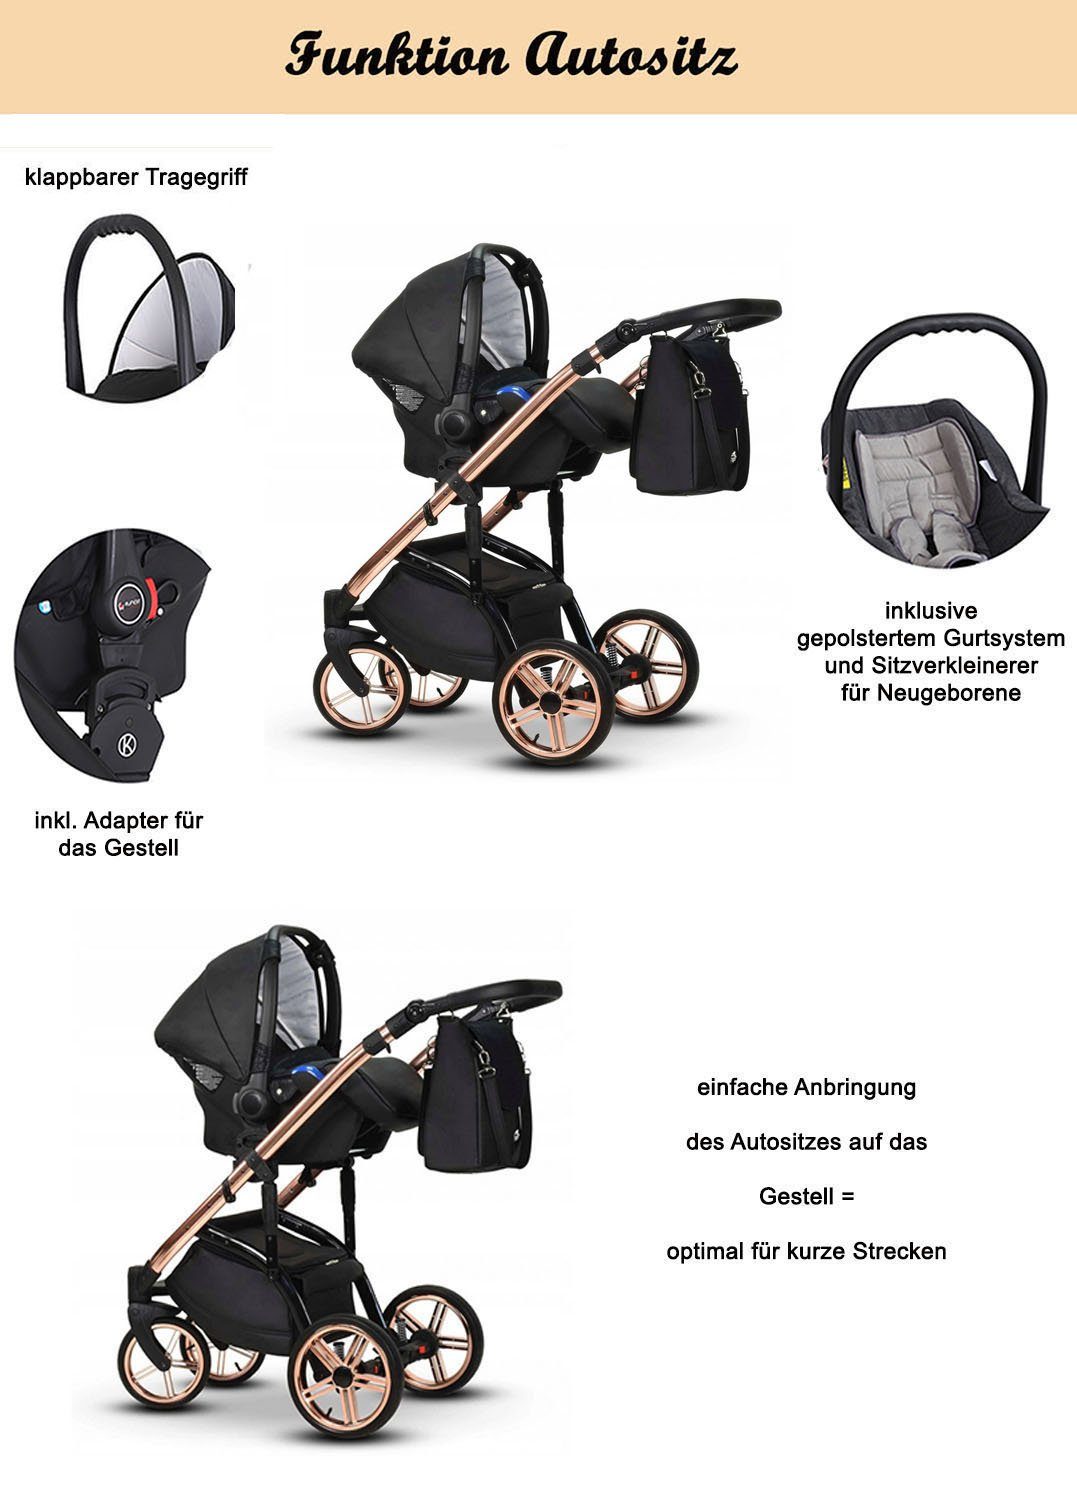 babies-on-wheels Kombi-Kinderwagen 3 in 1 Kinderwagen-Set Teile in - Lux 12 Vip 16 - Farben Grün-Gold-Dekor